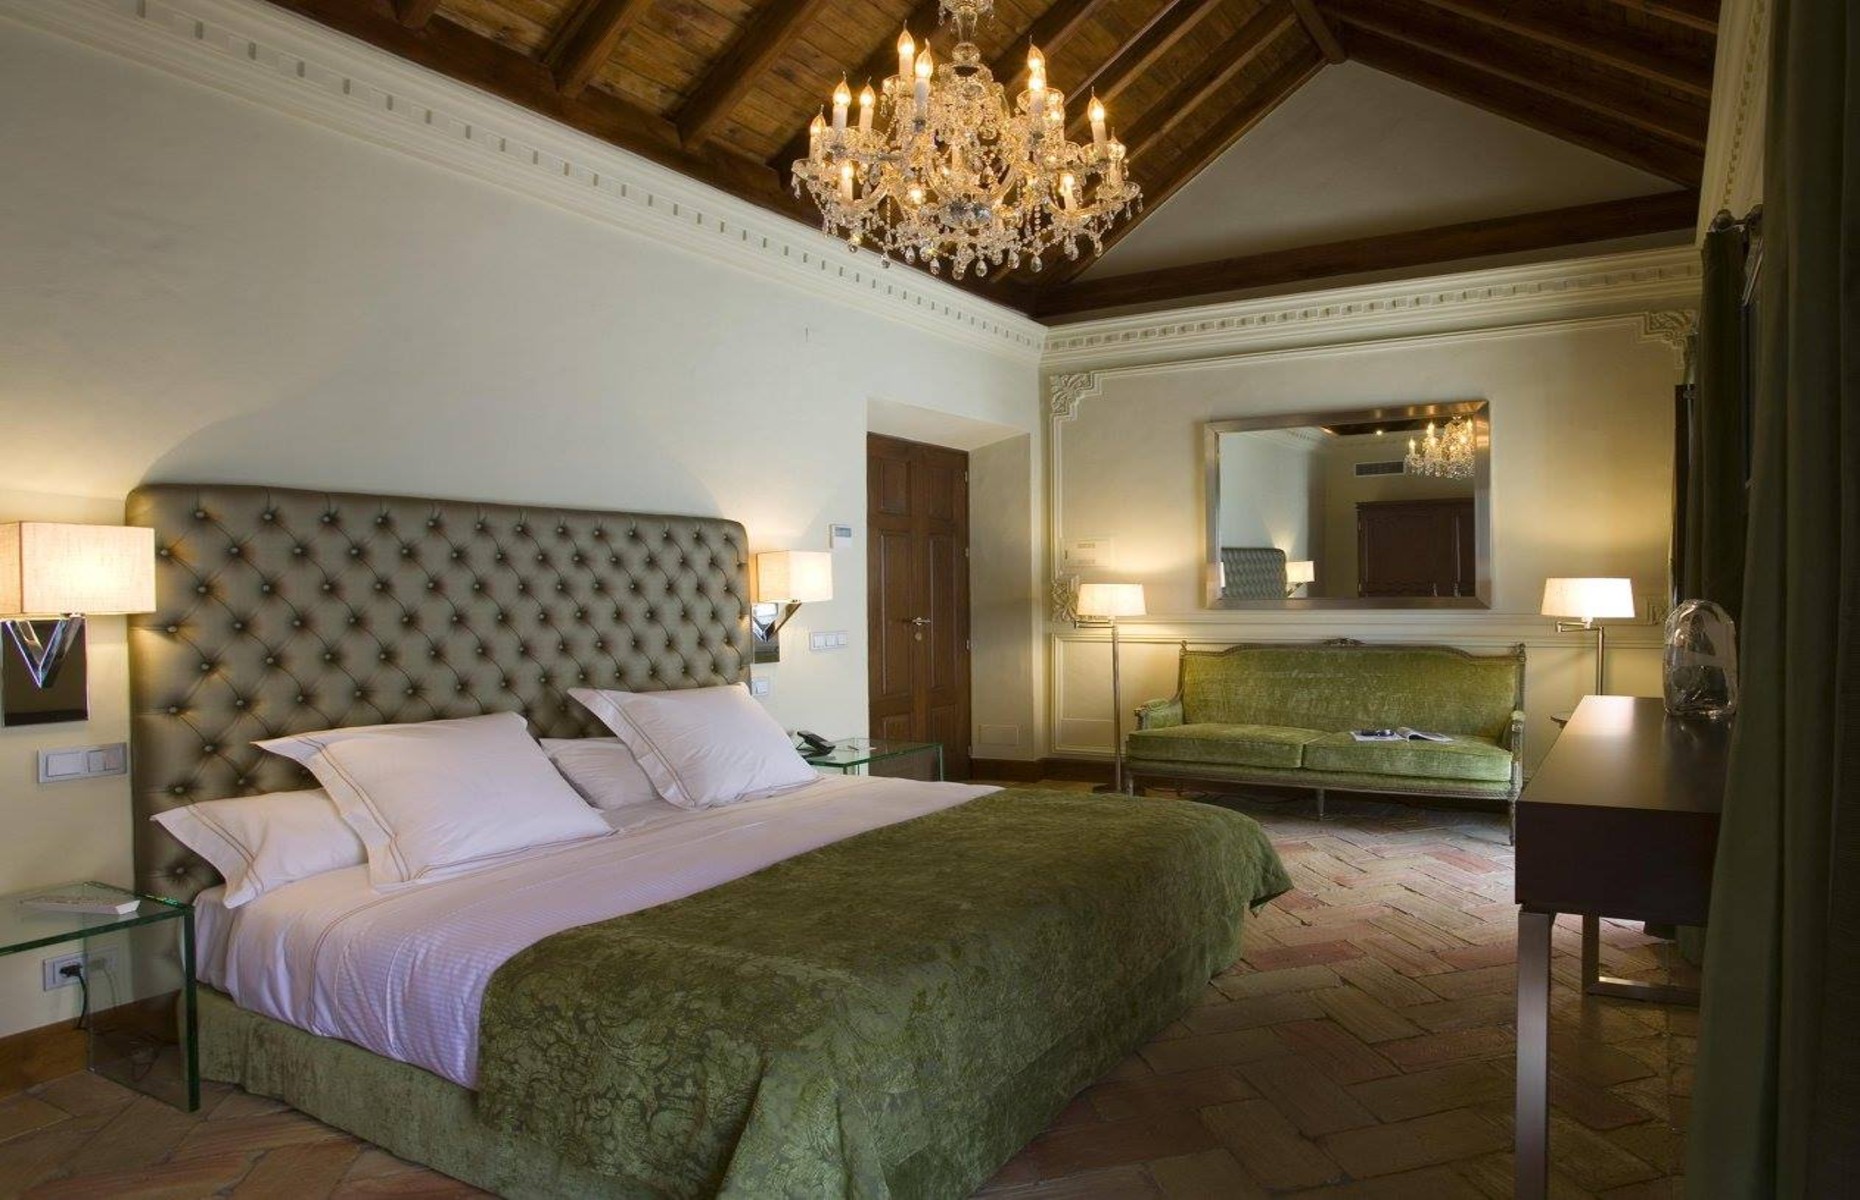 A bedroom at the Claude Hotel (Image: Hotel Claude Marbella/Facebook)